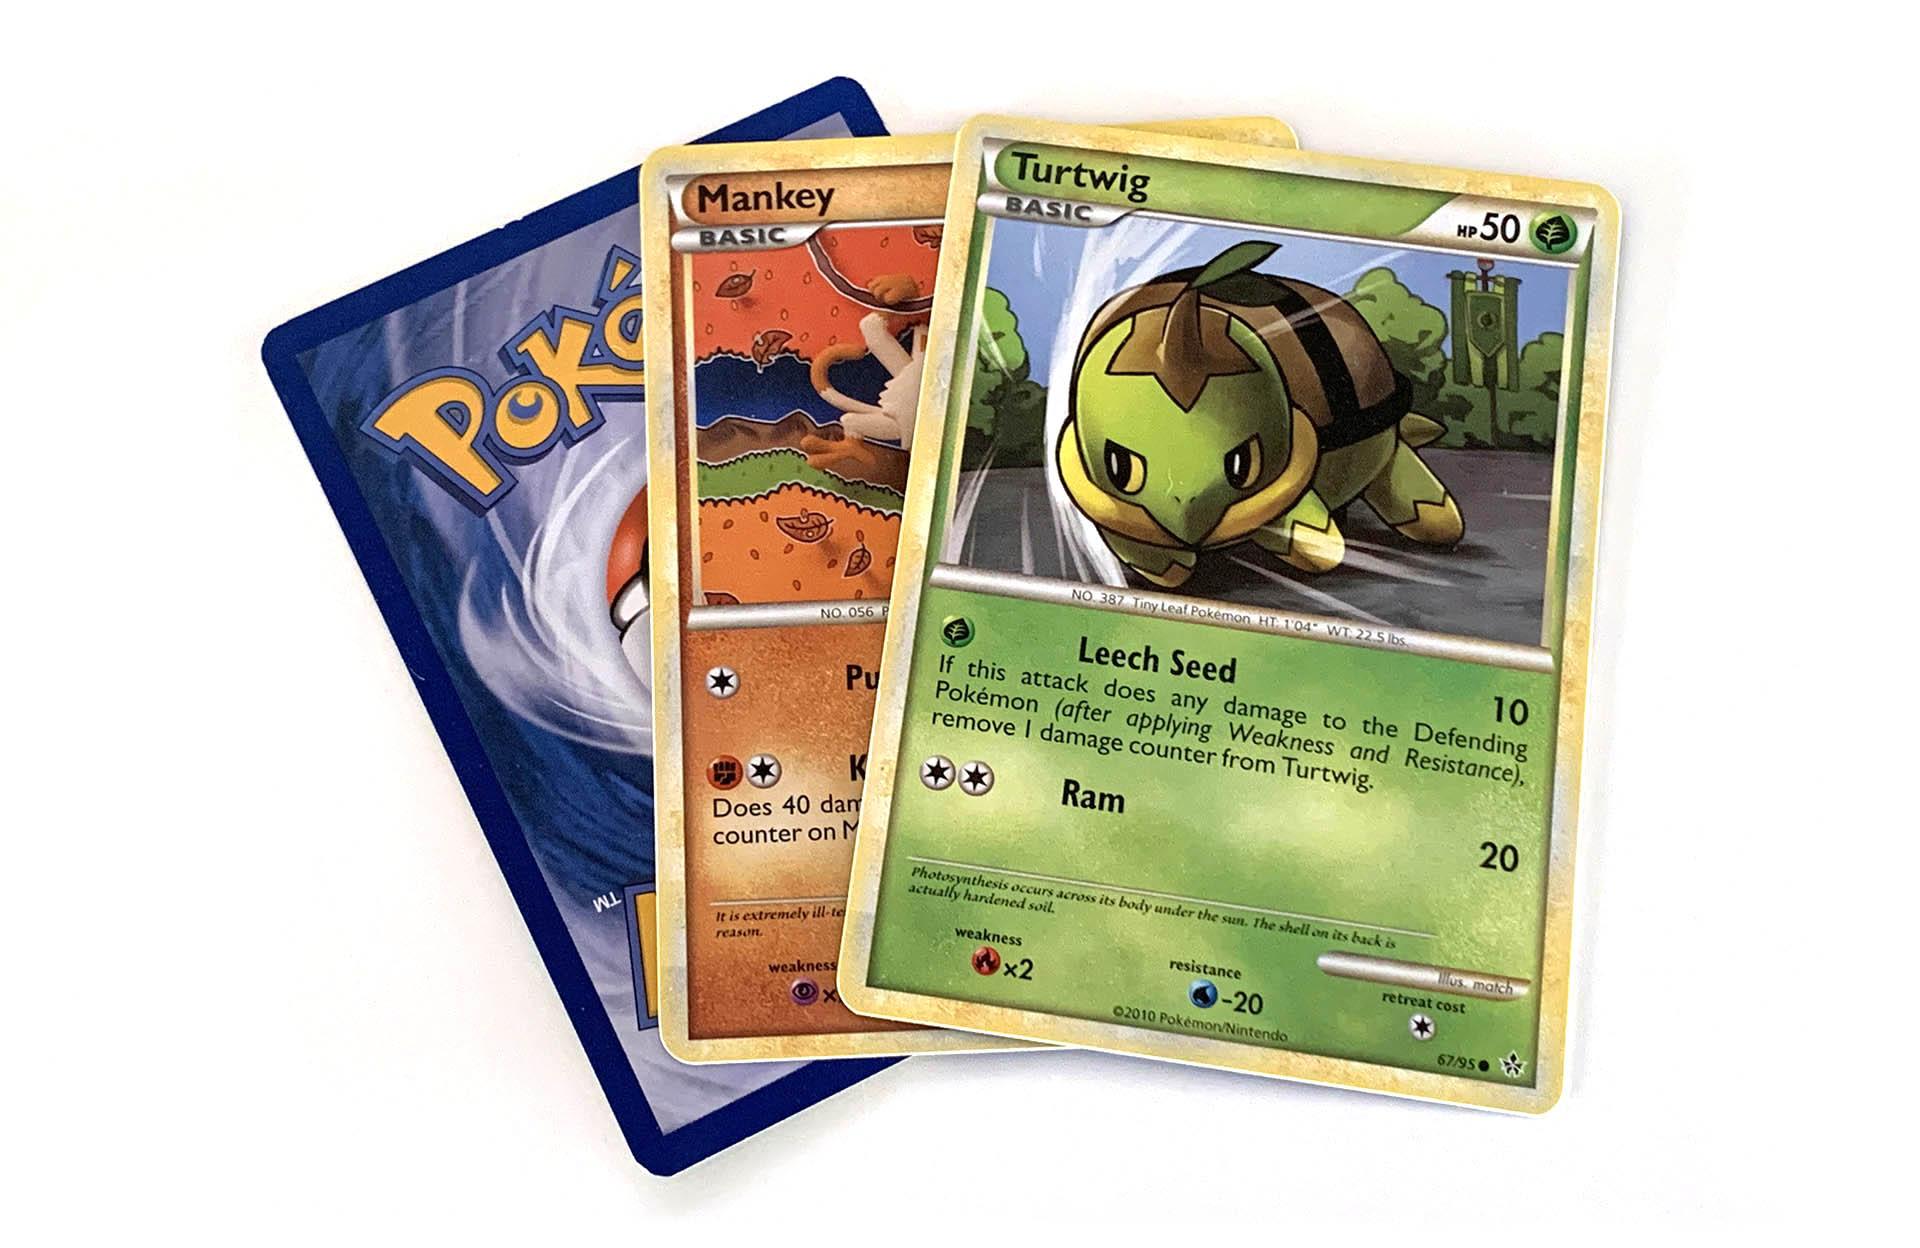 Pokémon trading cards 2010 series